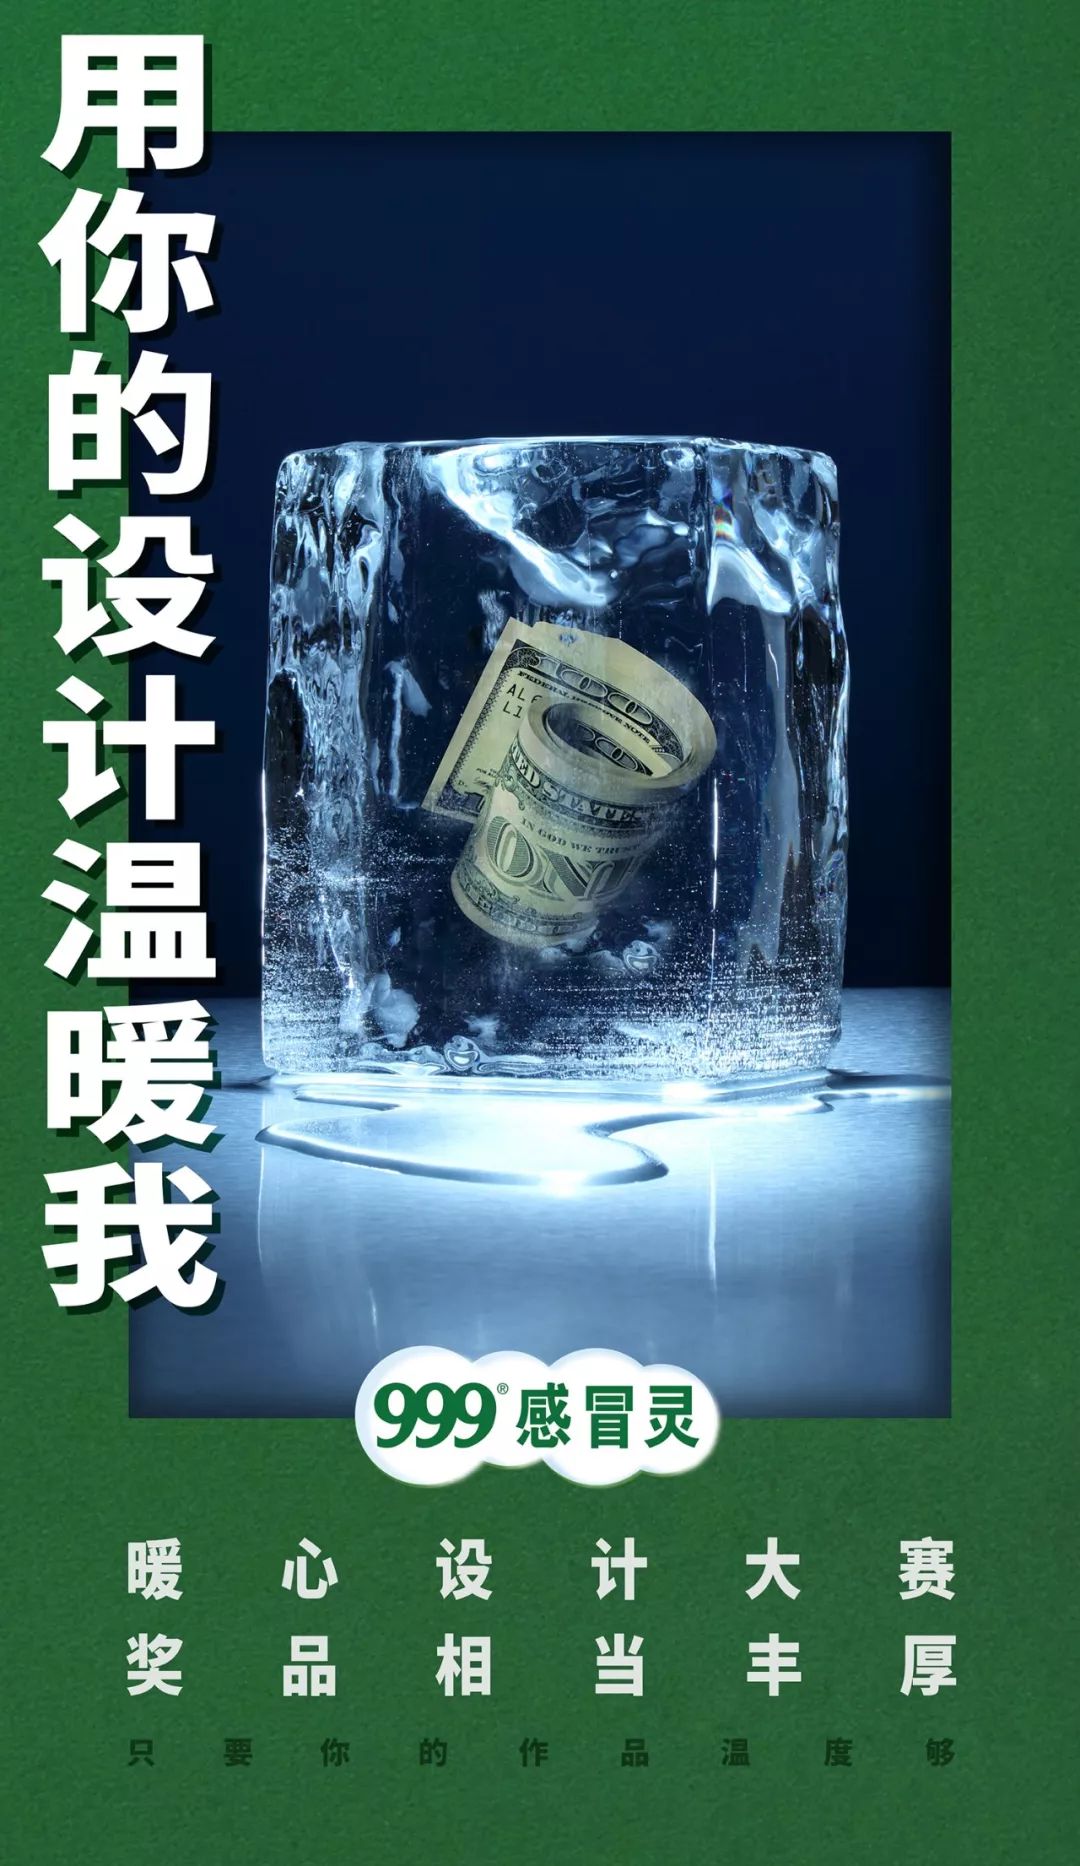 999感冒灵广告乌龟图片